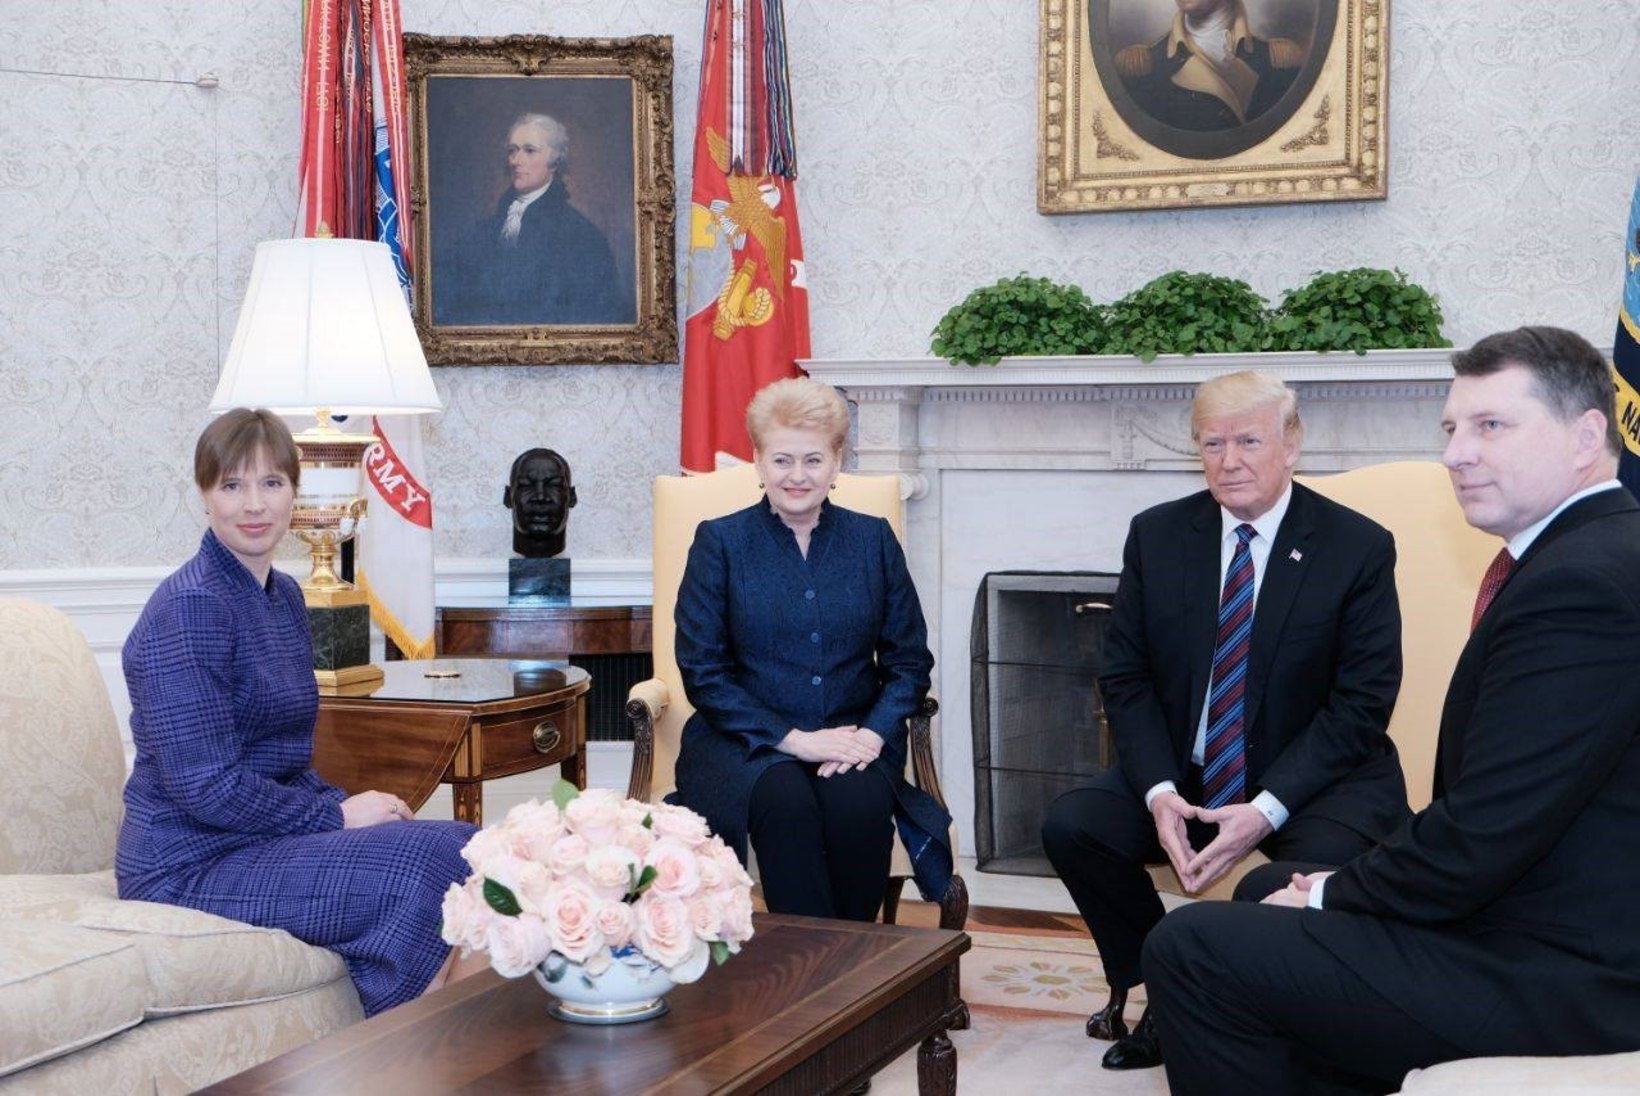 HEADUSE TELG: Kersti Kaljulaid andis Balti-USA koostööle uue nime